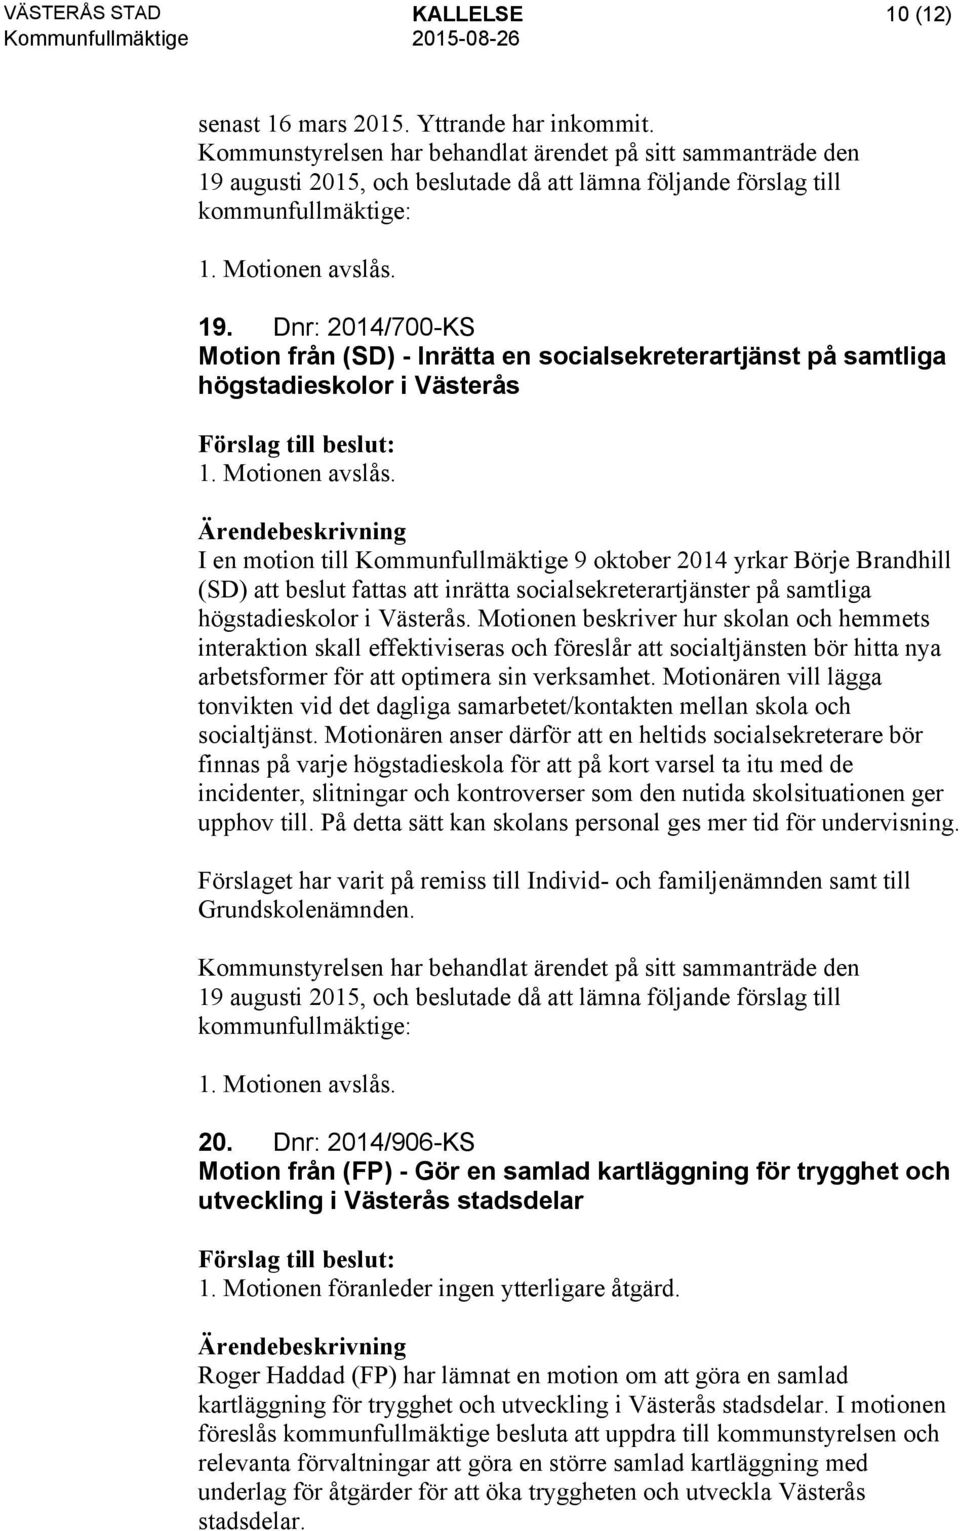 Motionen avslås. I en motion till Kommunfullmäktige 9 oktober 2014 yrkar Börje Brandhill (SD) att beslut fattas att inrätta socialsekreterartjänster på samtliga högstadieskolor i Västerås.